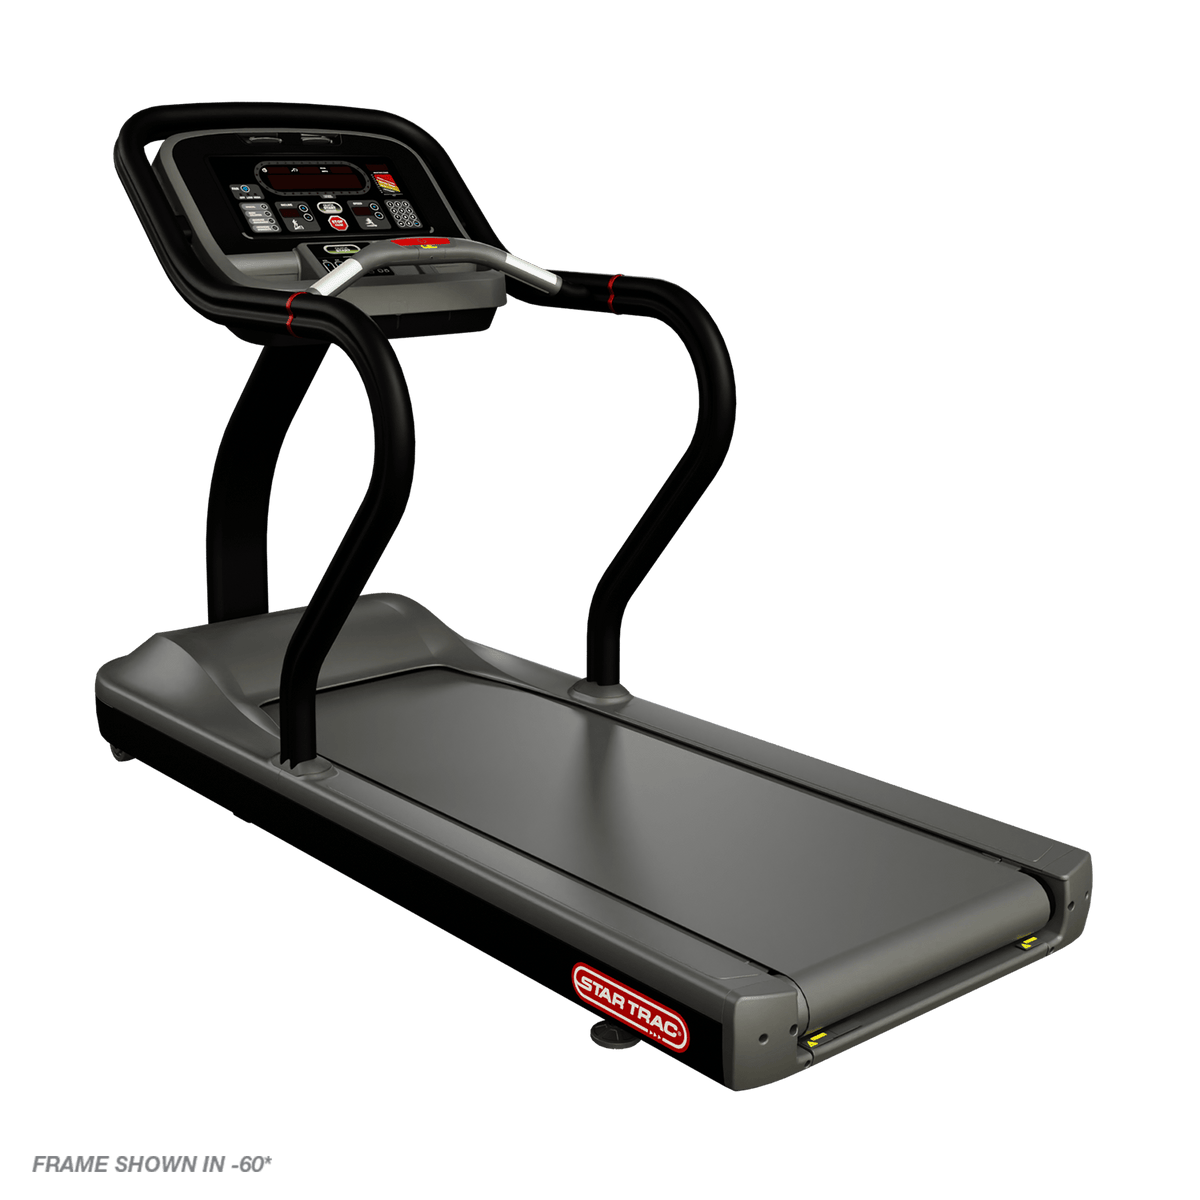 Star Trac STRX Treadmill w/ LCD - New